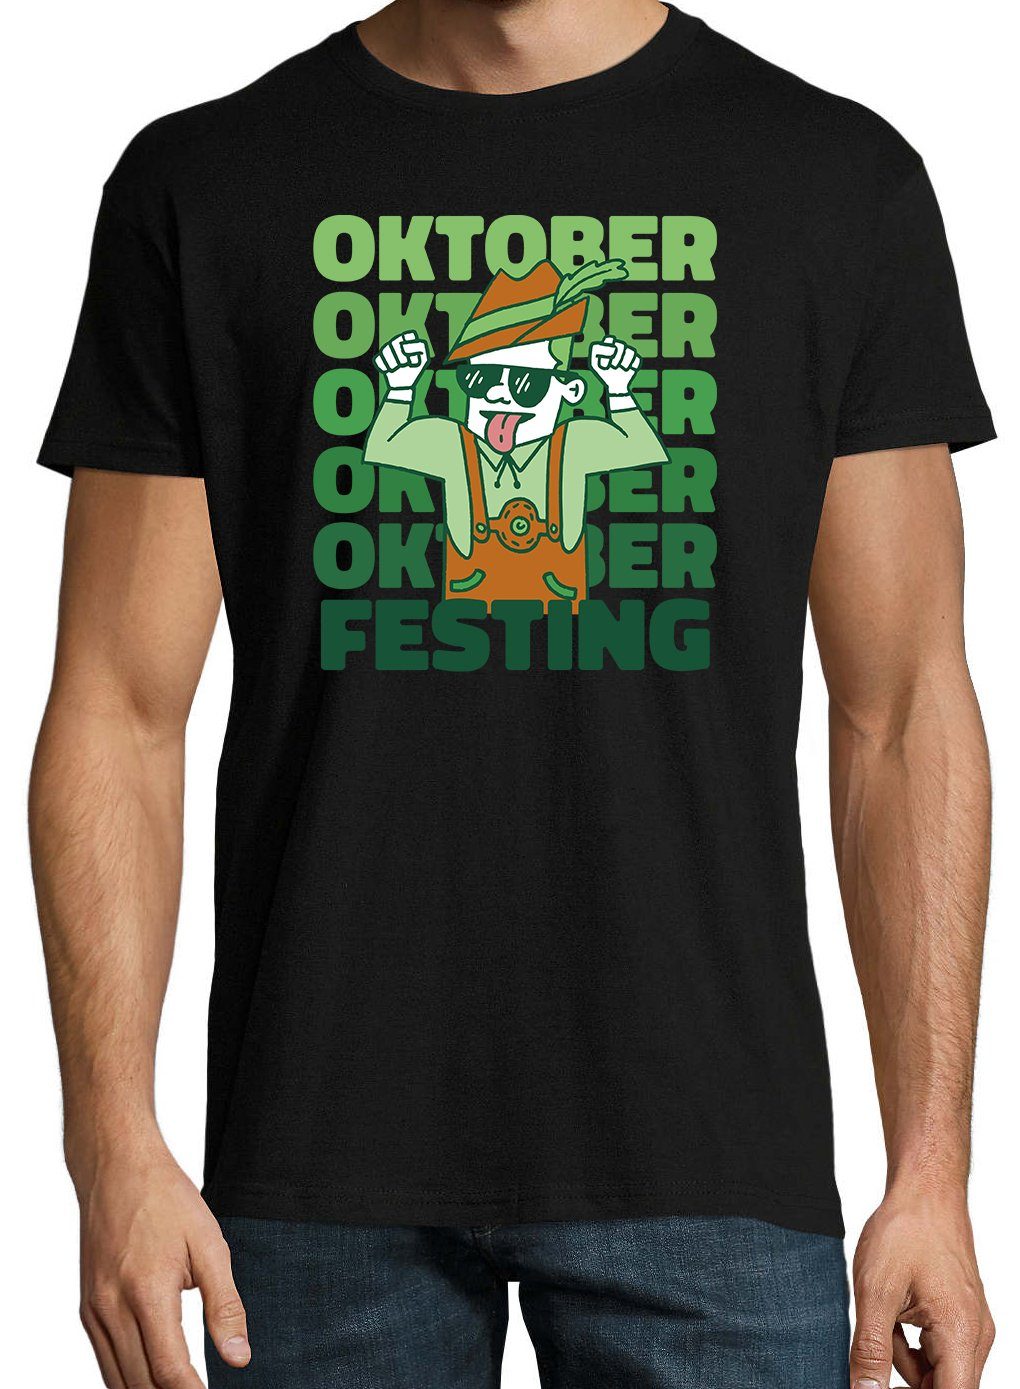 T-Shirt Festing mit Youth Schwarz Shirt Party Designz Oktober Herren Frontprint trendigem